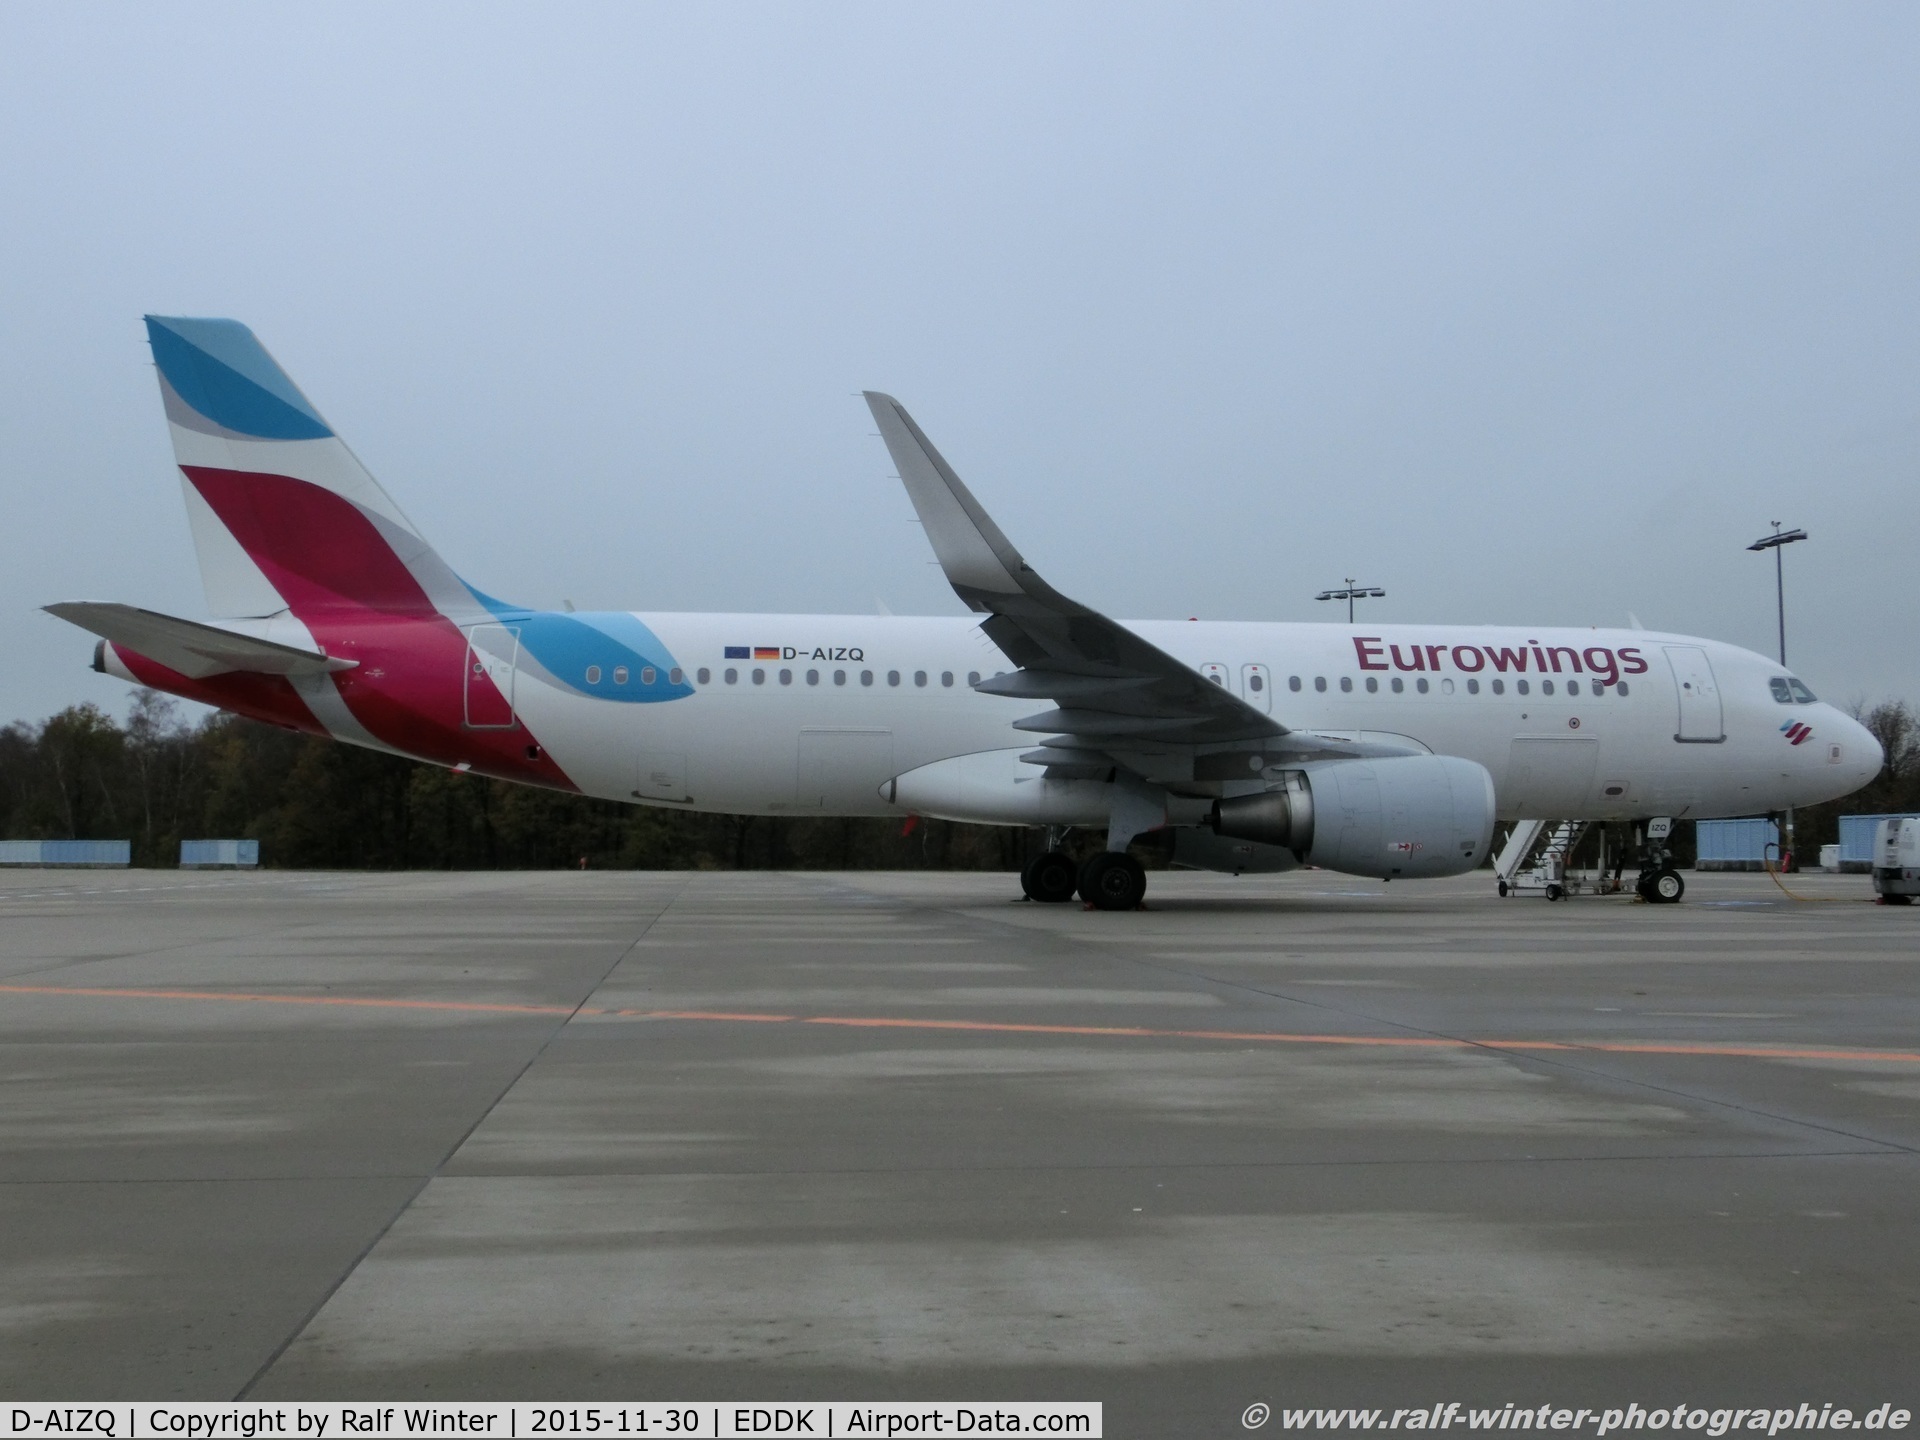 D-AIZQ, 2013 Airbus A320-214 C/N 5497, Airbus A320-214(W) - EW EWG Eurowings ex Lufthansa - 5497 - D-AIZQ - 30.11.2015 - CGN